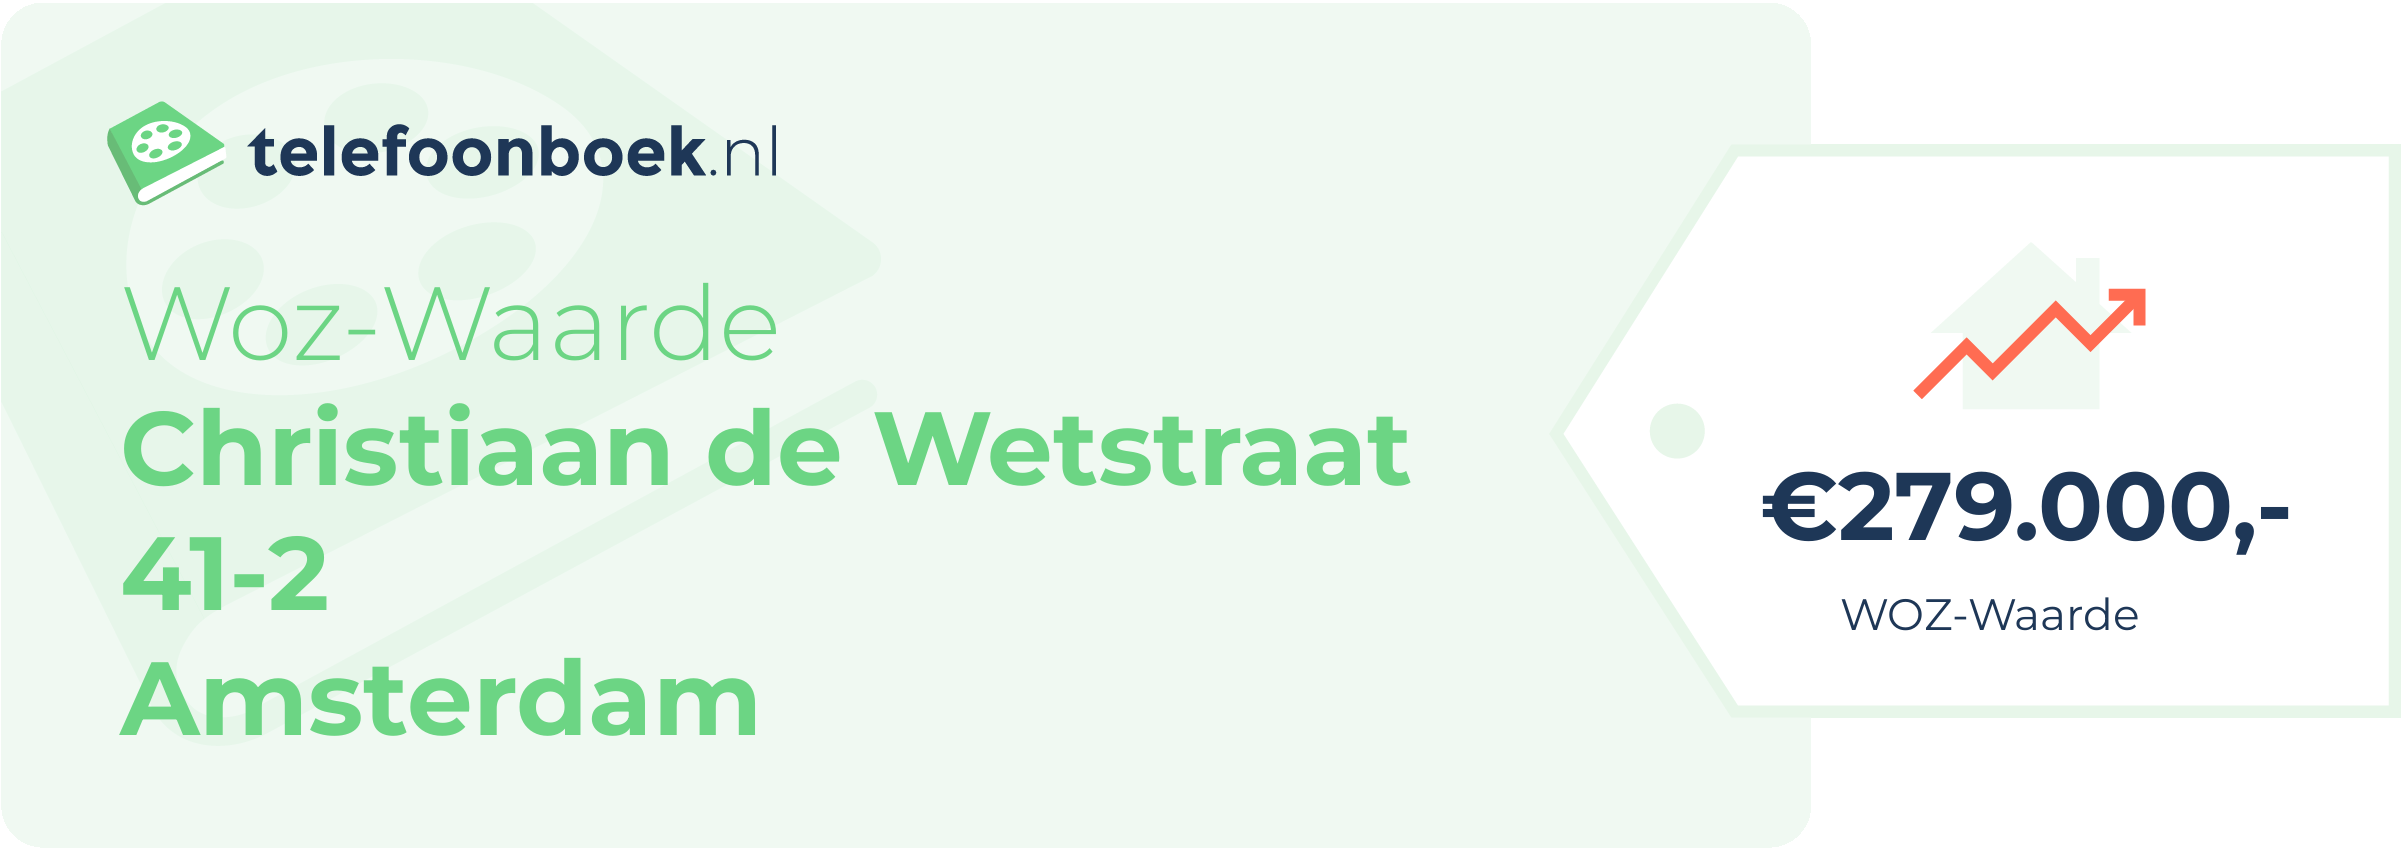 WOZ-waarde Christiaan De Wetstraat 41-2 Amsterdam